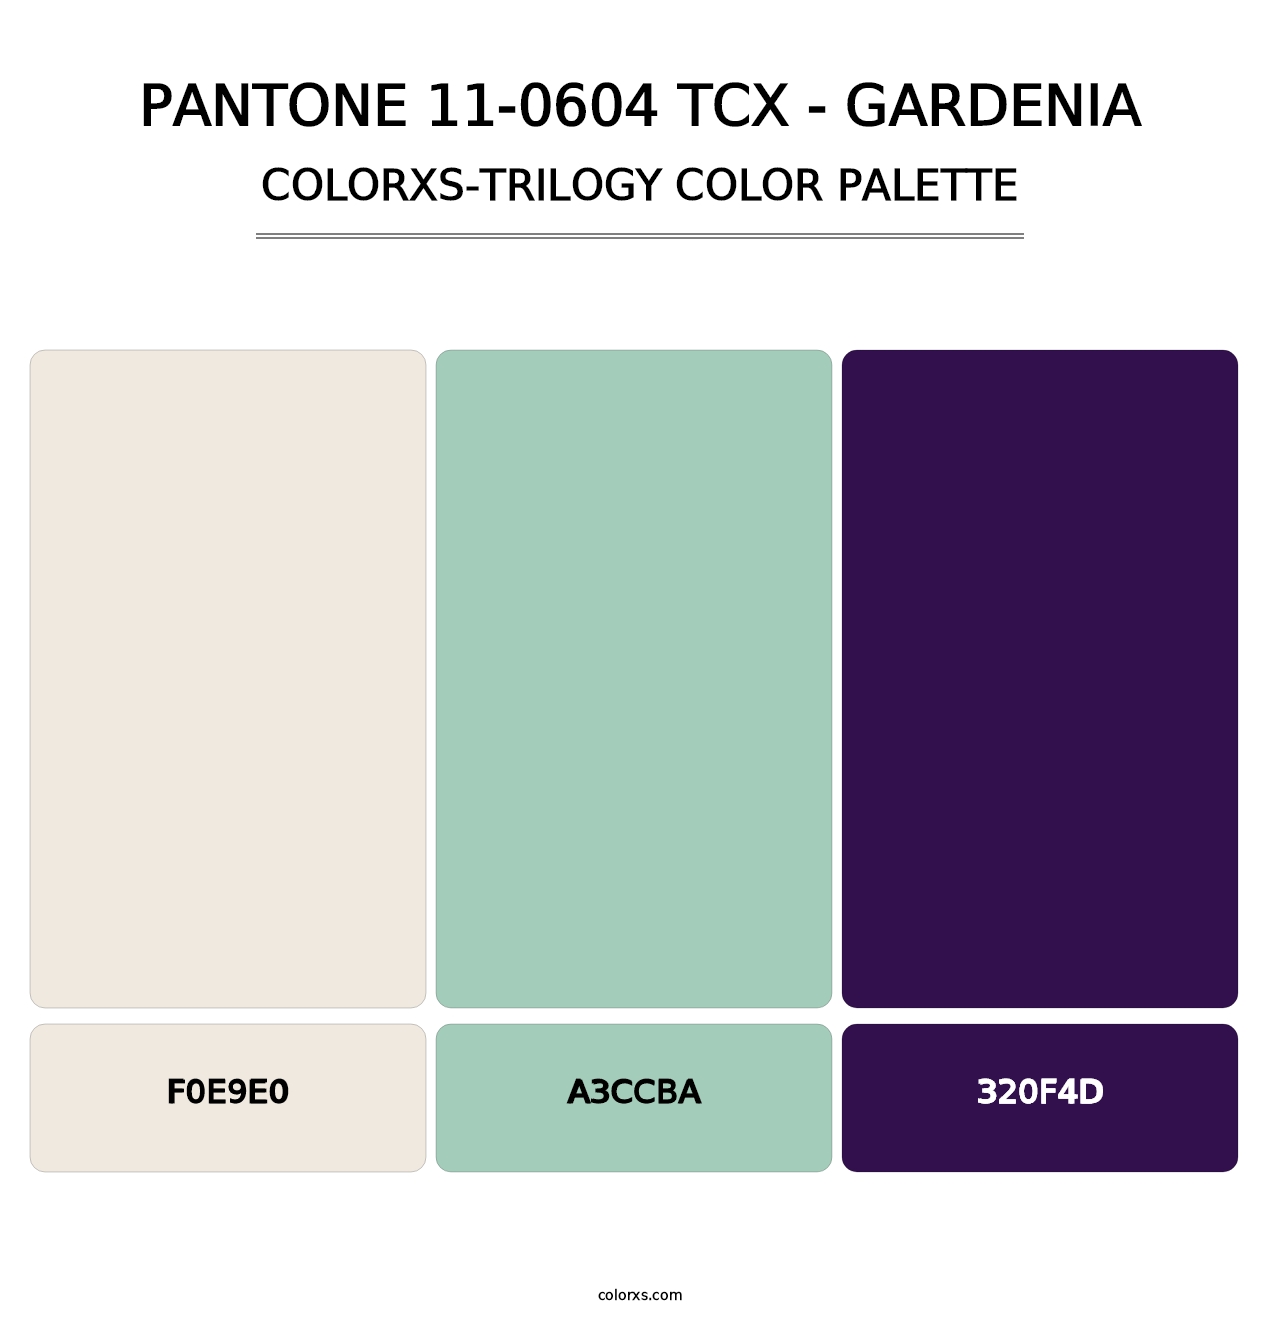 PANTONE 11-0604 TCX - Gardenia - Colorxs Trilogy Palette